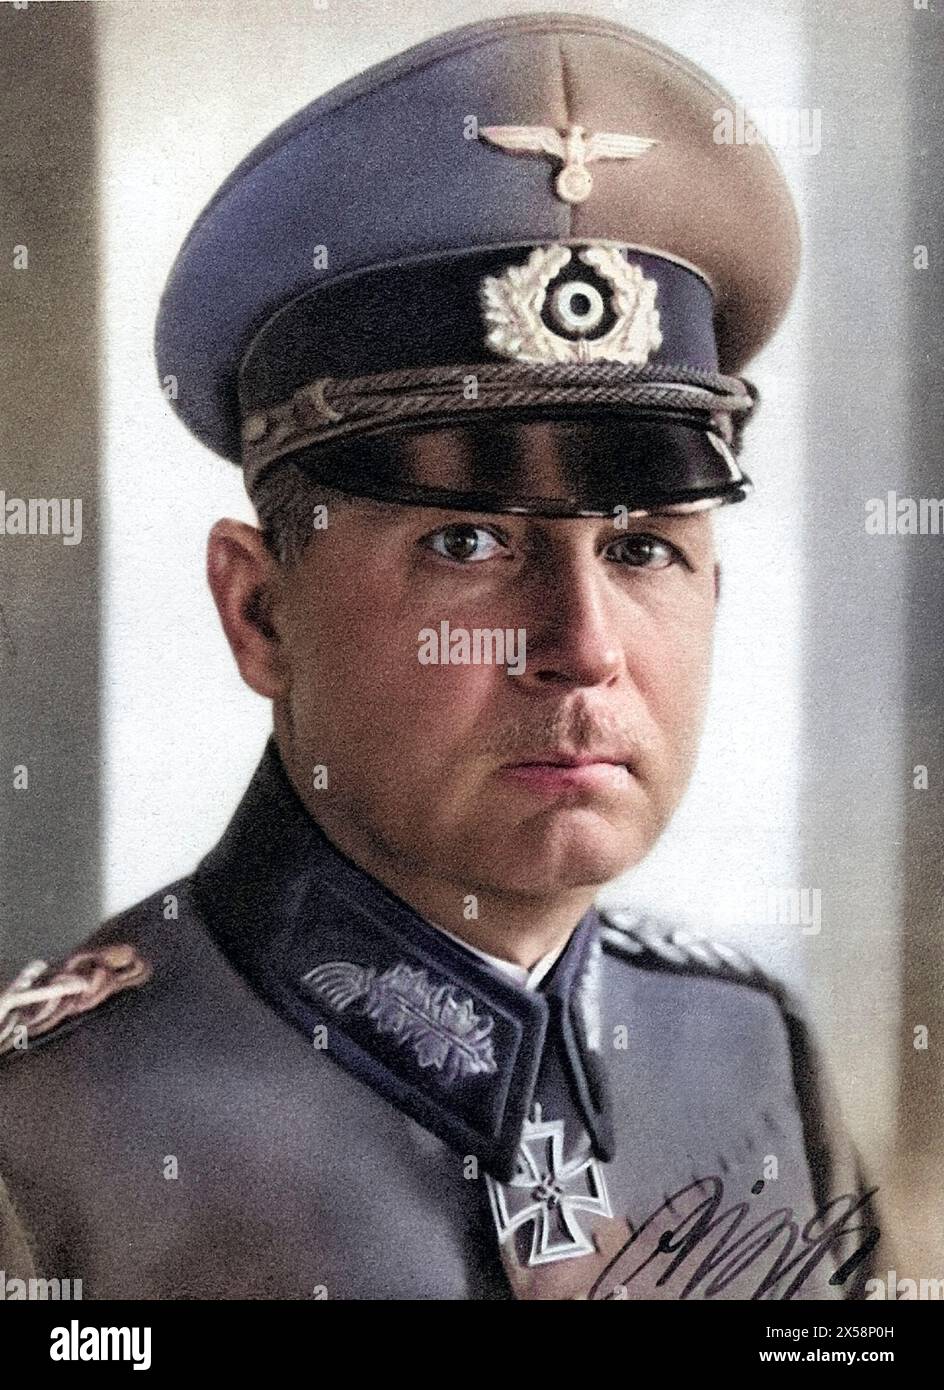 List, Wilhelm, 10.5.1880 - 18.6,1971, deutscher General, Porträt, 1940, NUR REDAKTIONELLE VERWENDUNG Stockfoto